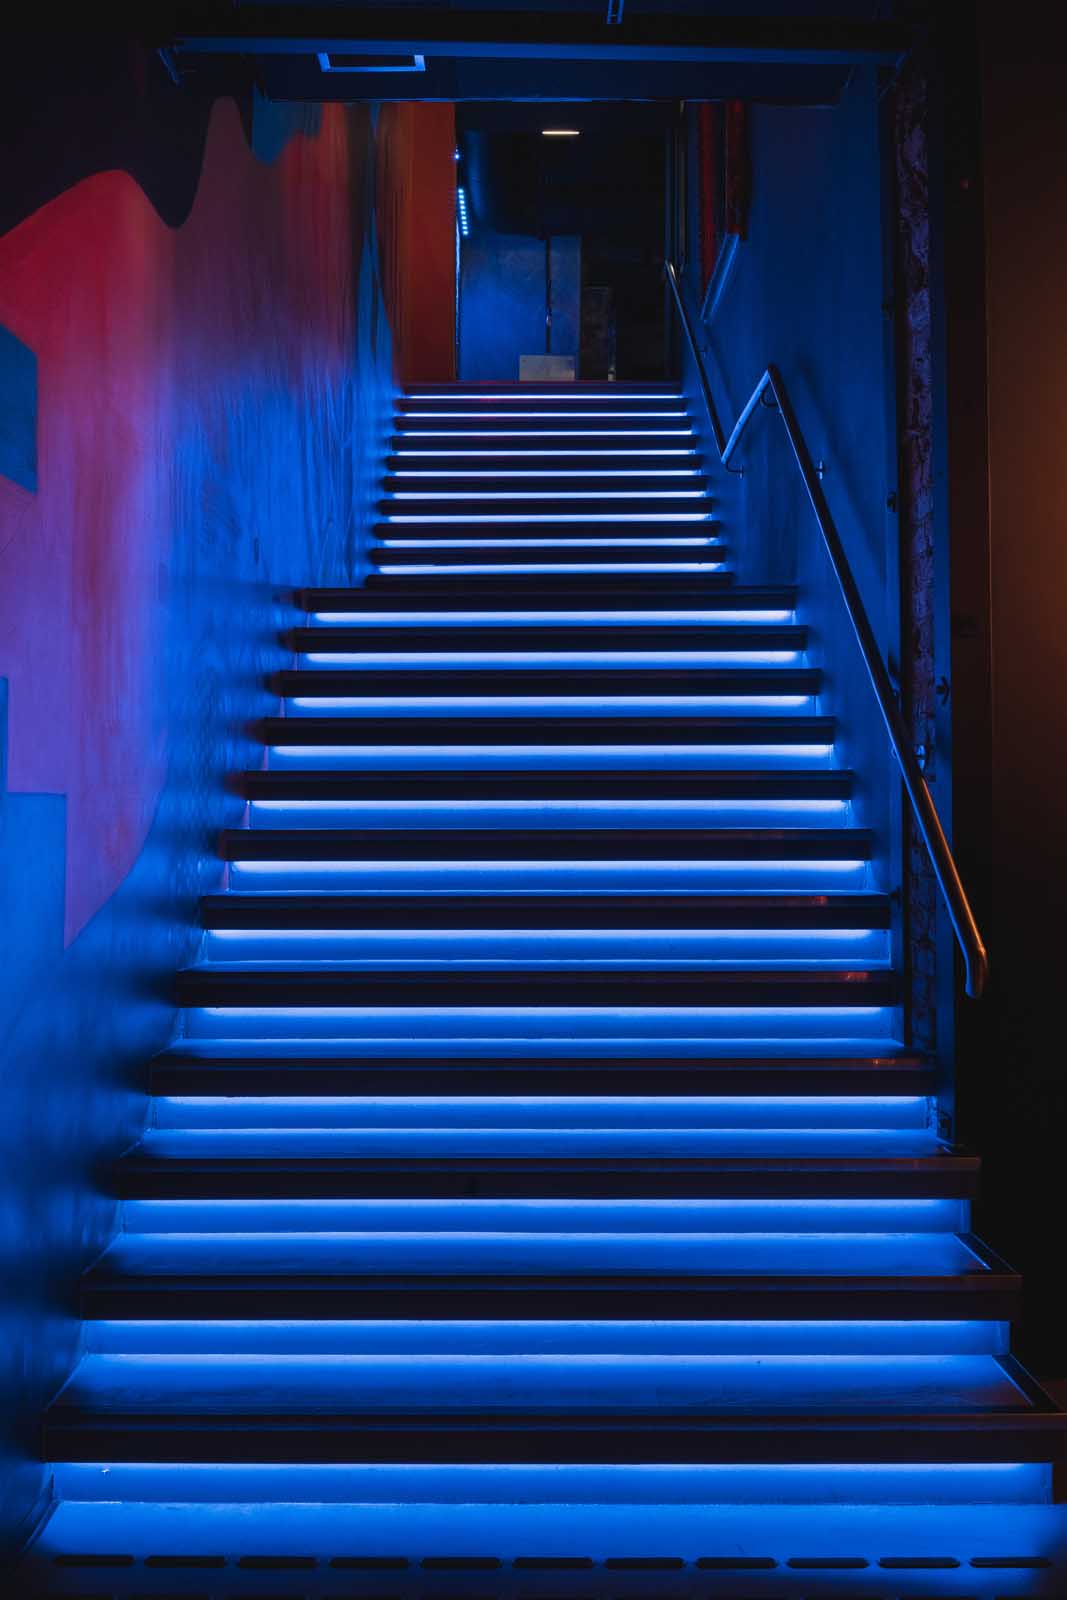 Trappen er belyst med RGBW LED-striper for å skape en dramatisk og mystisk effekt